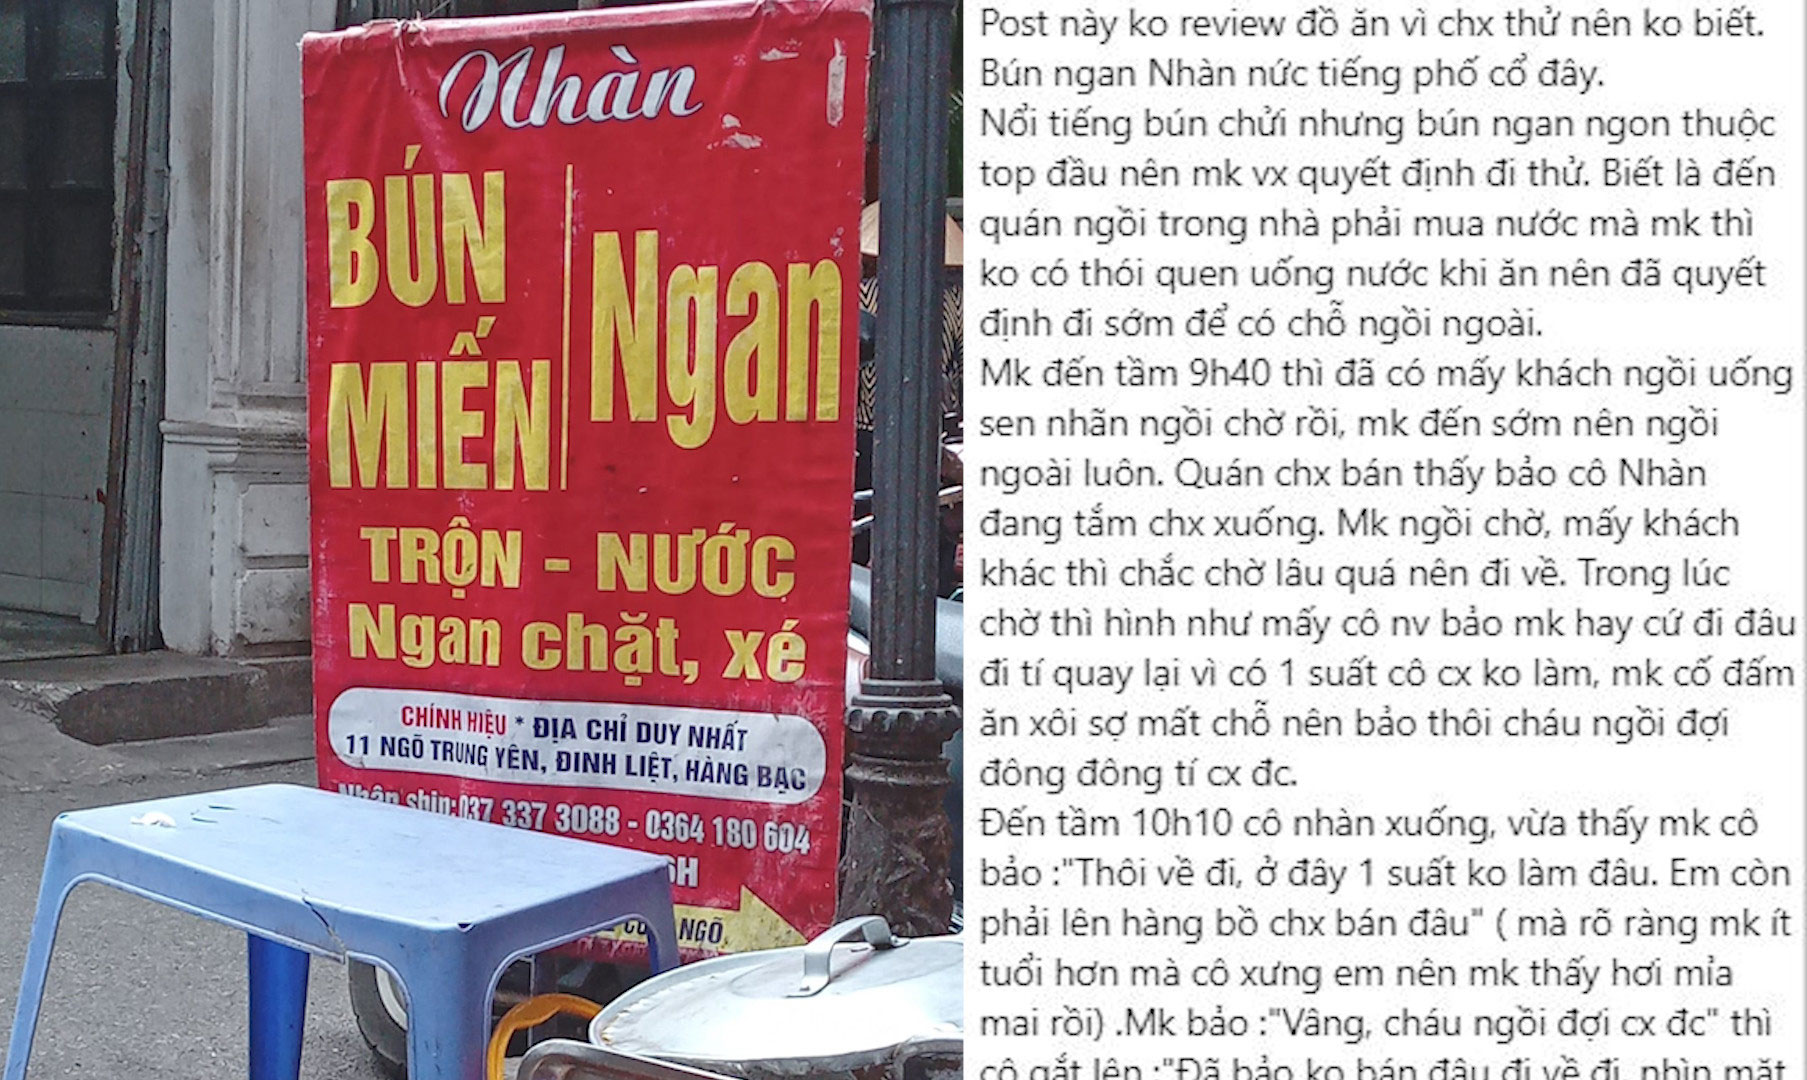 Chủ quán ngan Nhàn nổi tiếng Hà Nội bị tố chửi khách thậm tệ, đòi đốt vía-1